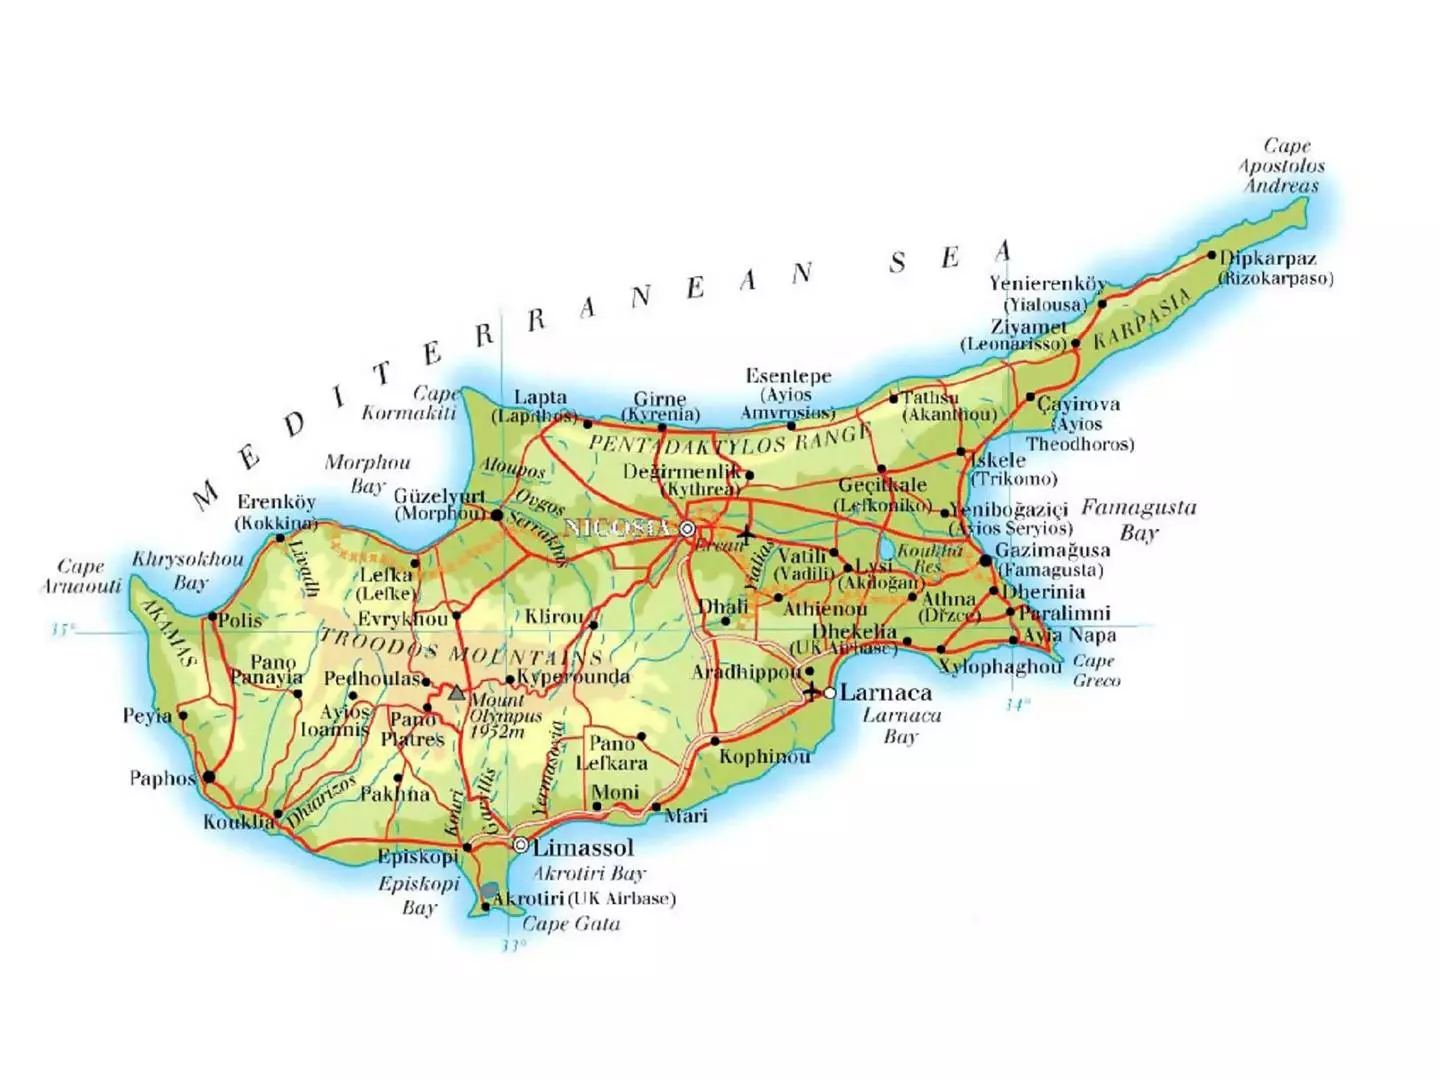 Аэропорты на кипре: описание, расположение, маршруты на карте